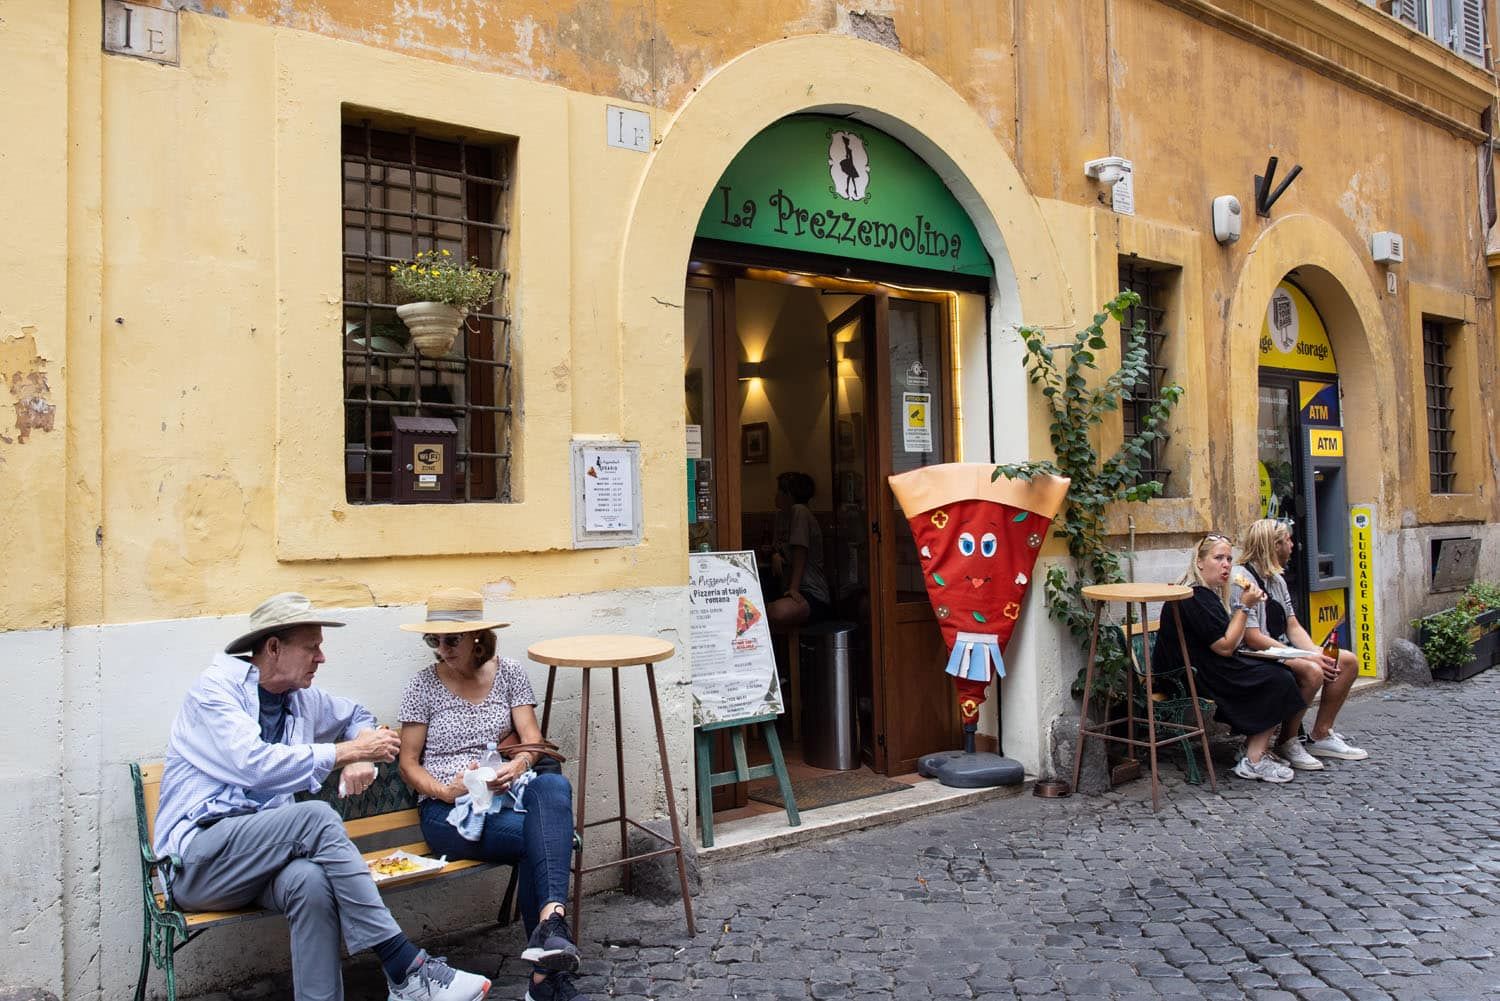 La Prezzemolina Rome | Where to Eat in Rome